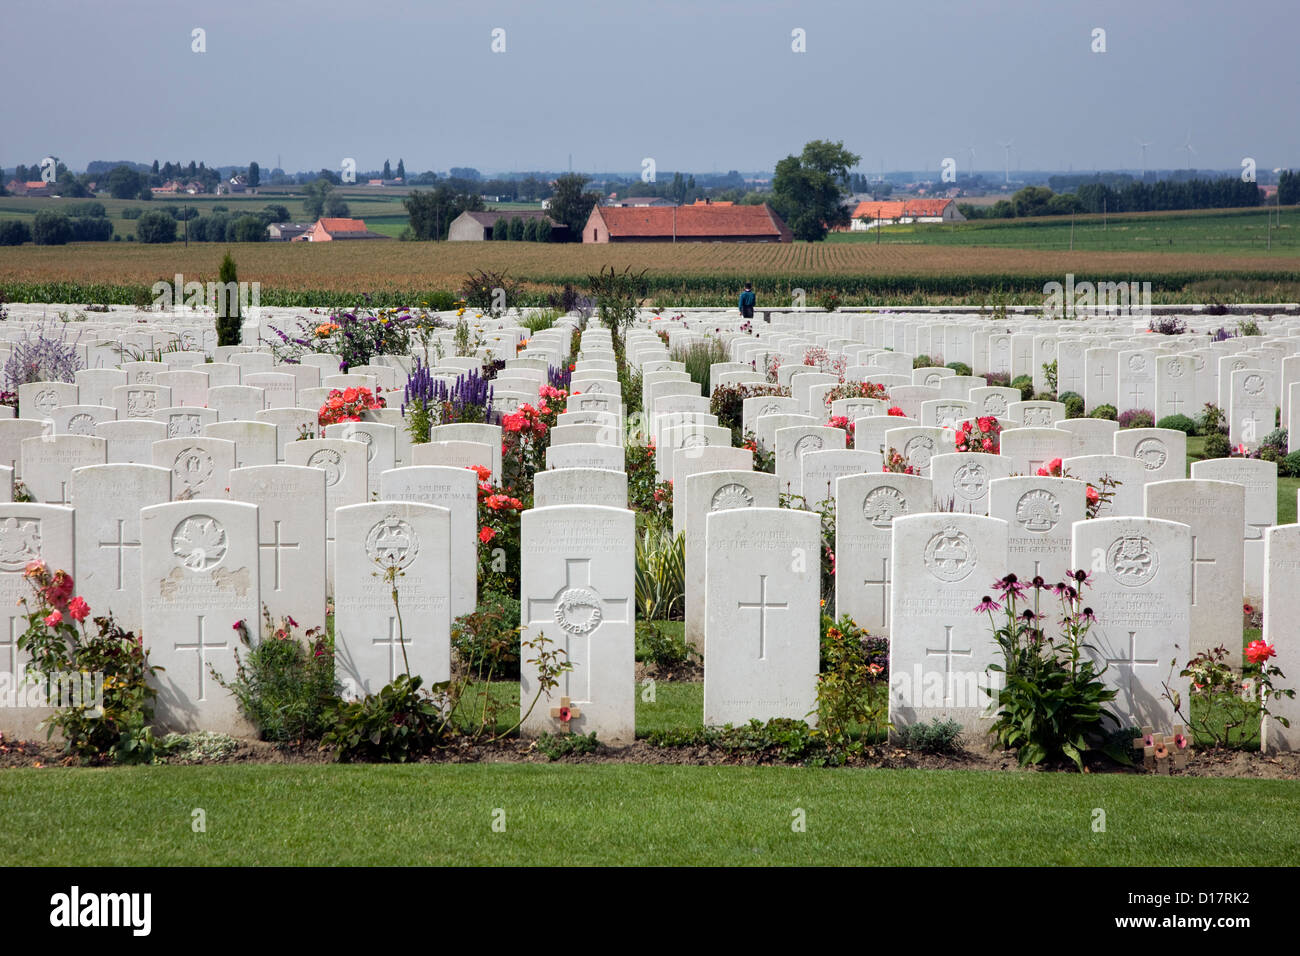 Commission des sépultures de guerre du Commonwealth cimetière de Tyne Cot pour la première guerre mondiale, l'un des soldats britanniques à Passendale, Flandre orientale, Belgique Banque D'Images